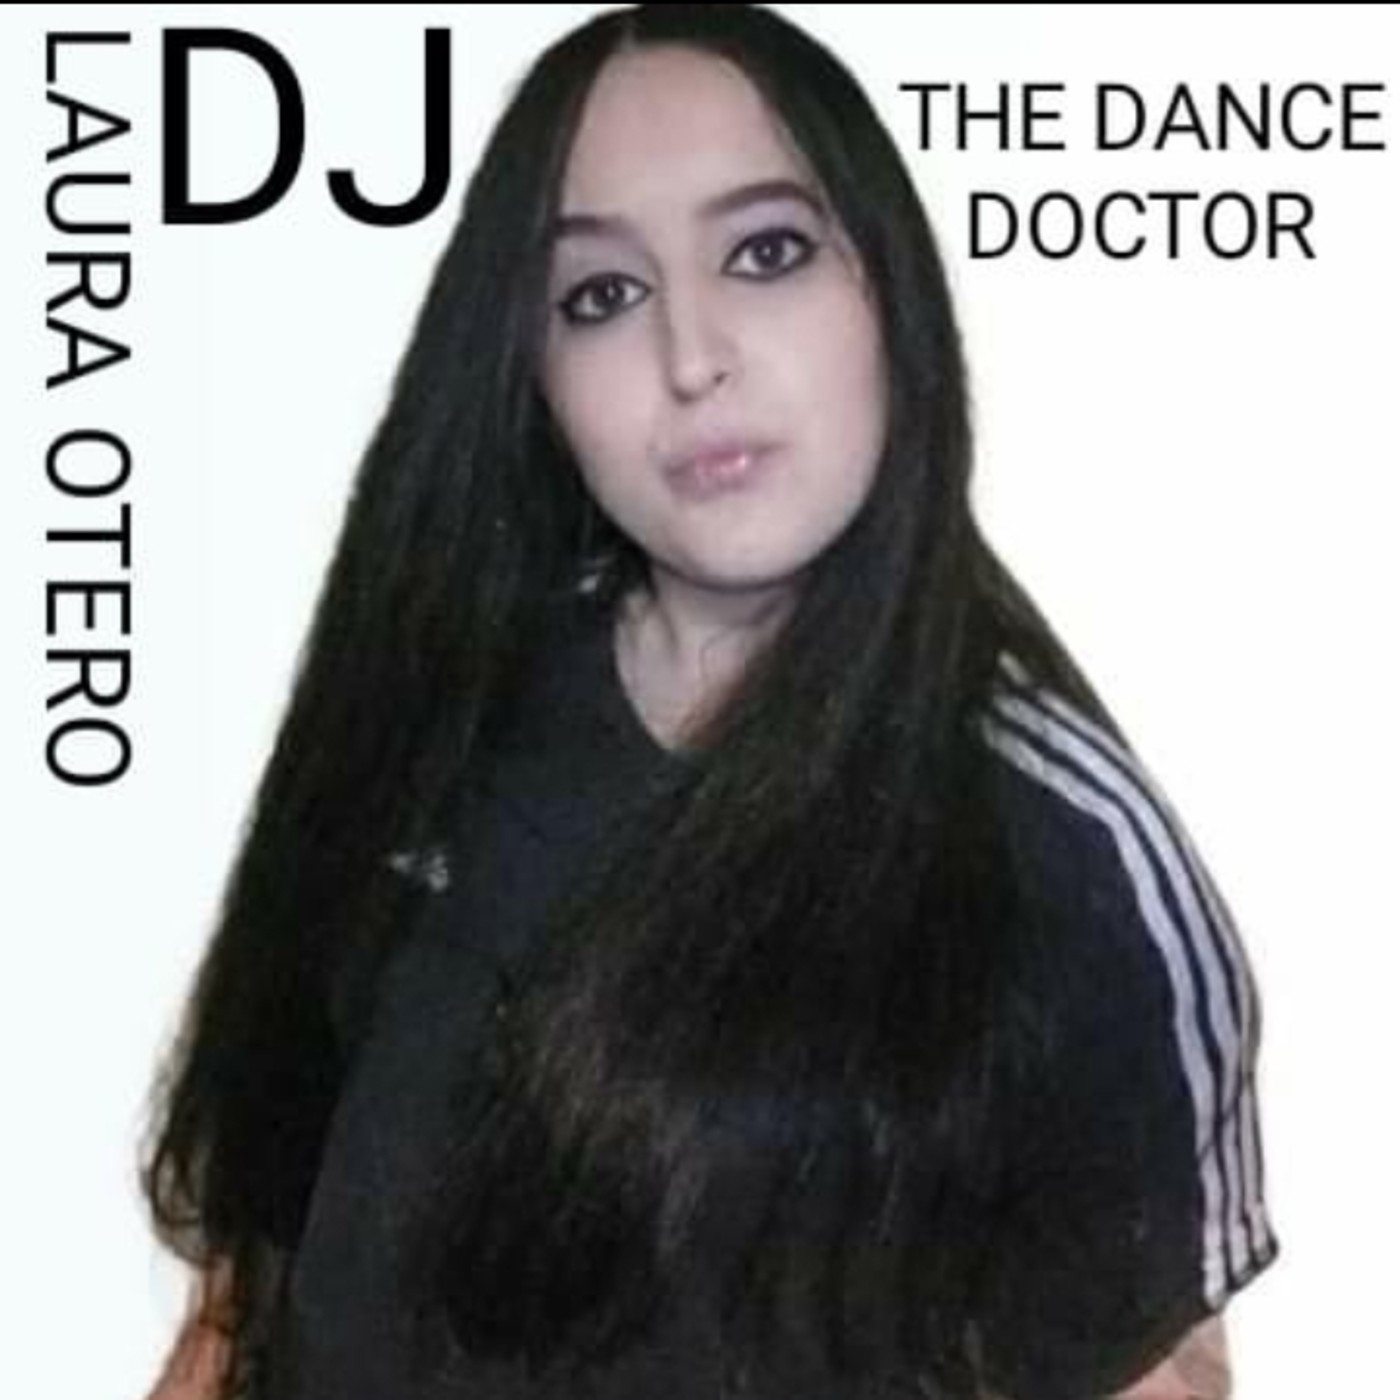 The Dance Docthor